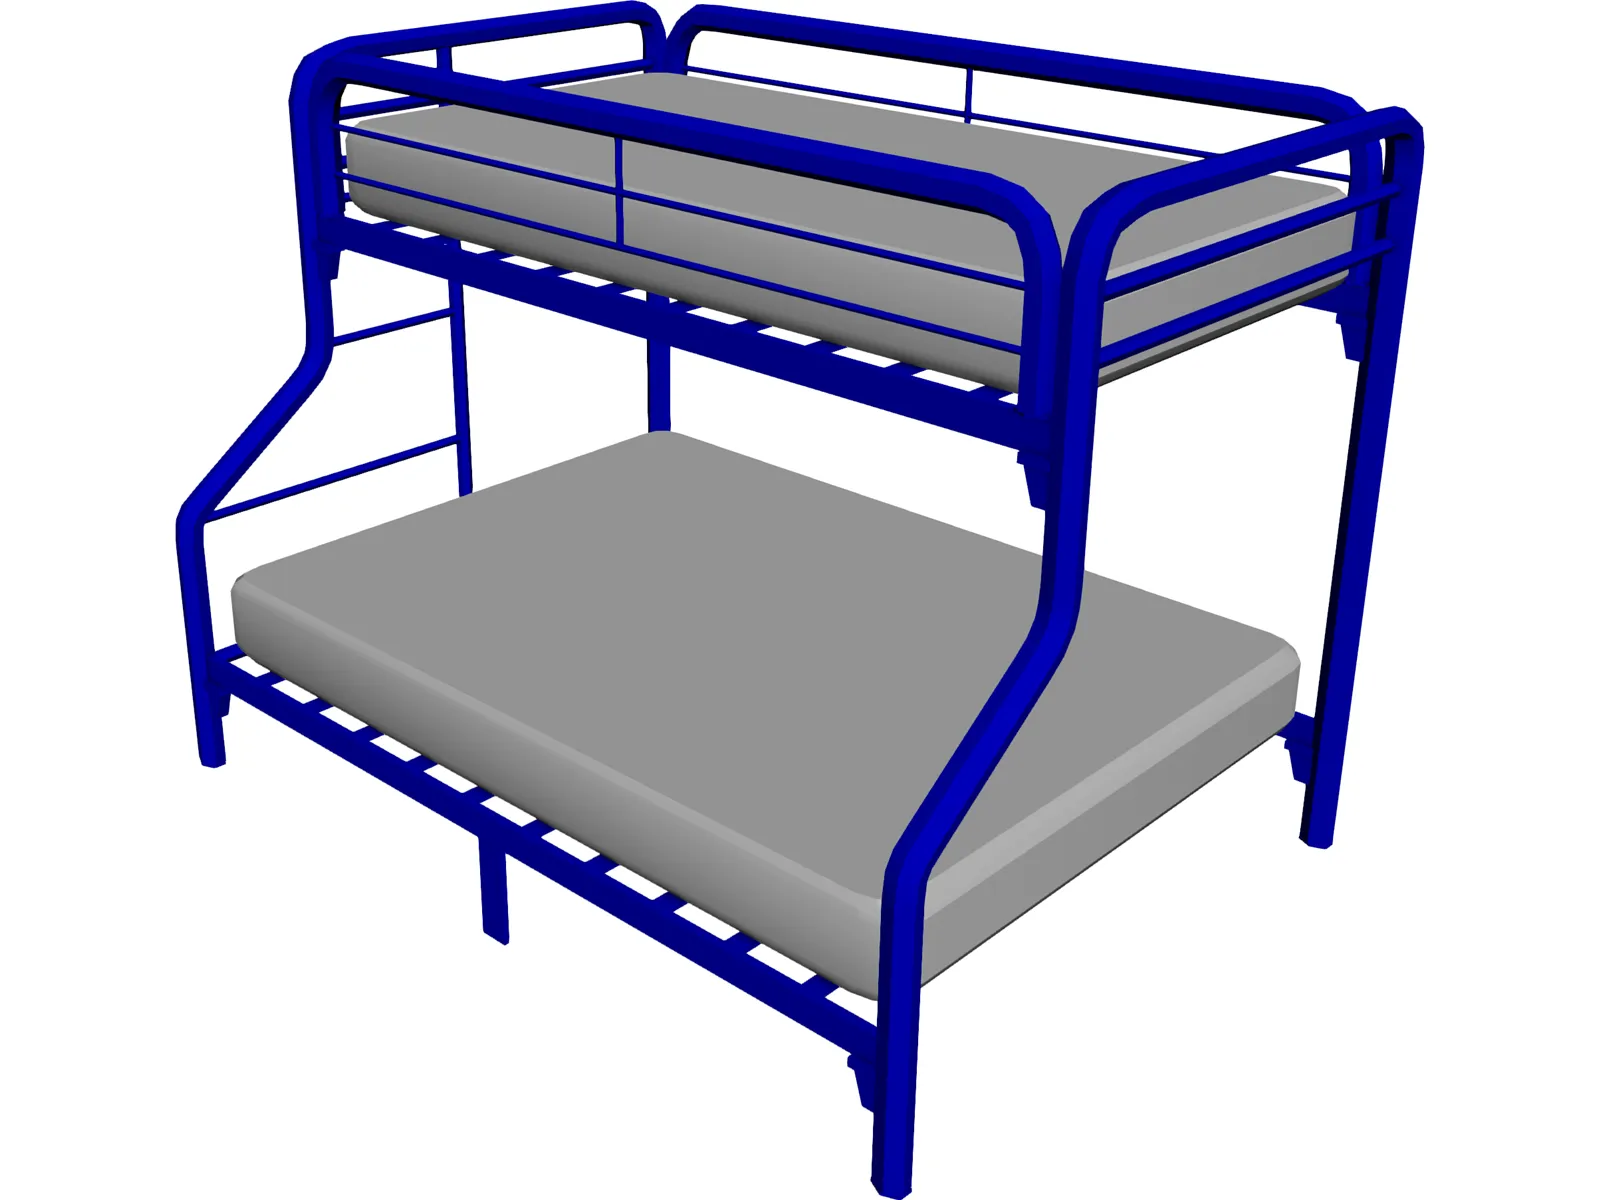 Bed Bunk 3D Model